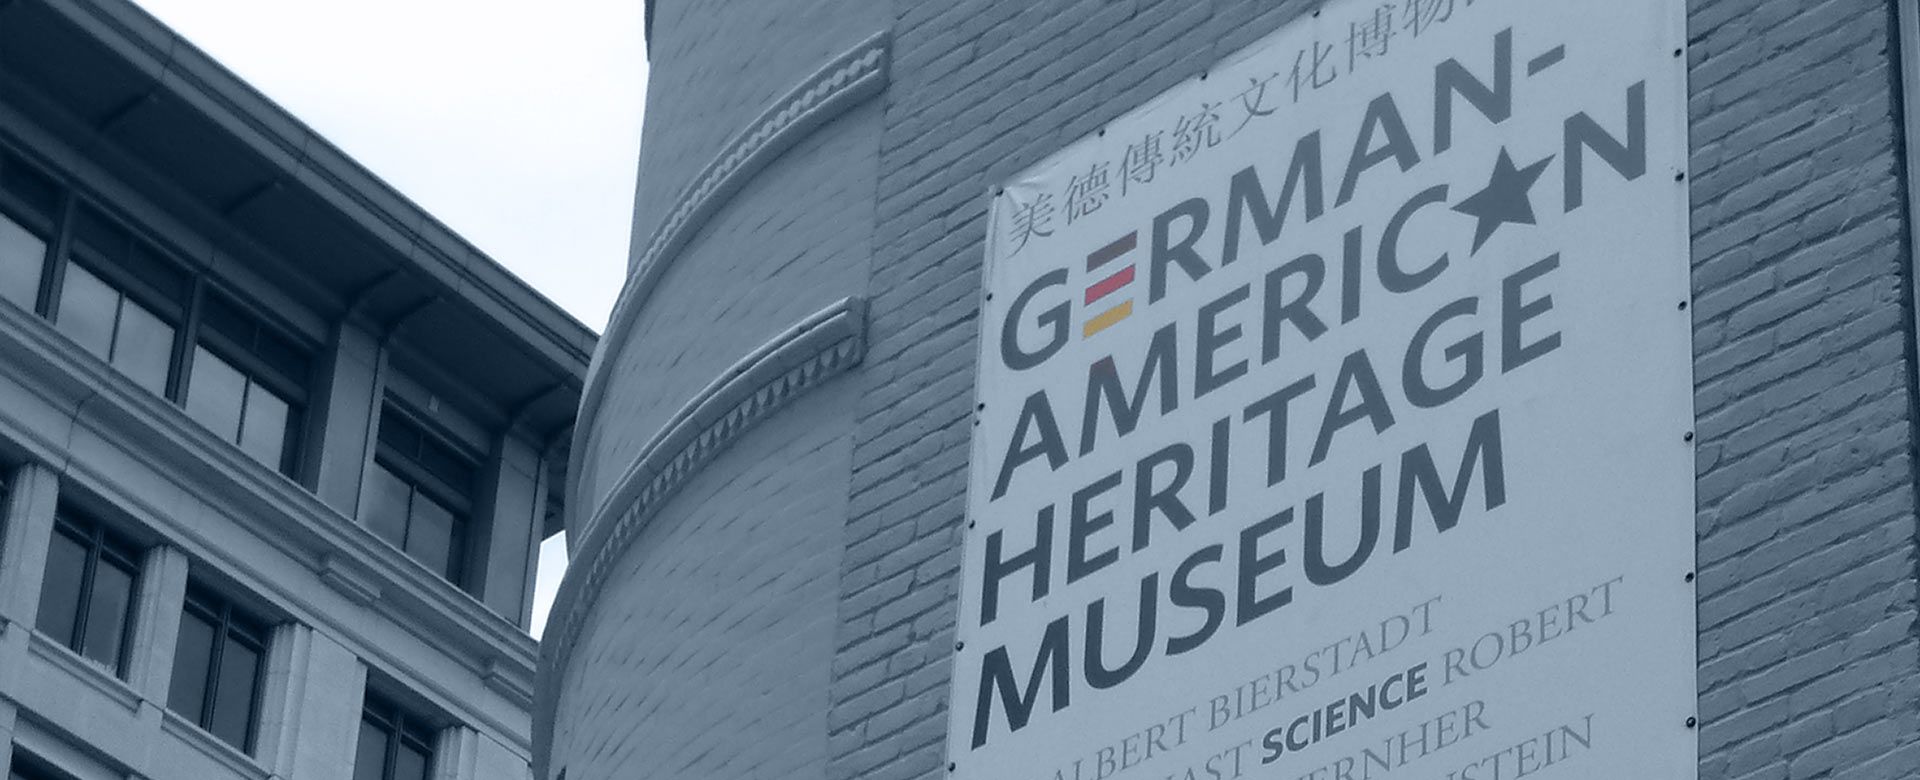 German-American Heritage Museum